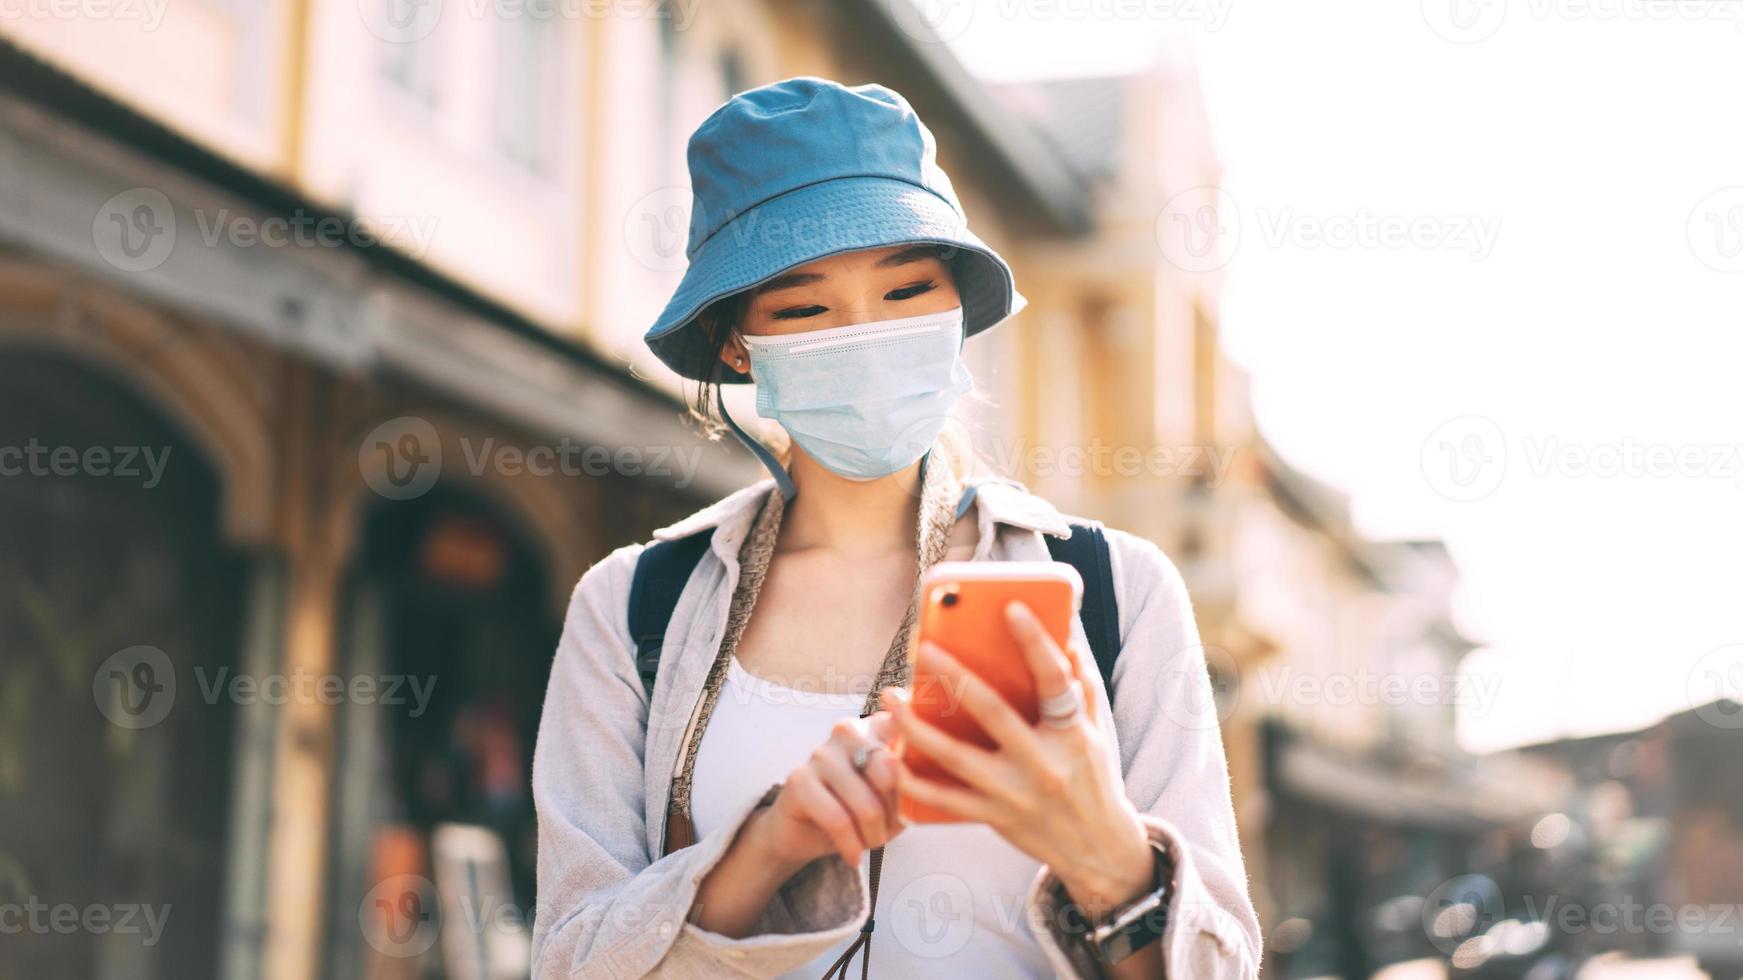 junge erwachsene asiatische frau rucksack reisende tragen gesichtsmaske und verwenden handy für die anwendung. foto